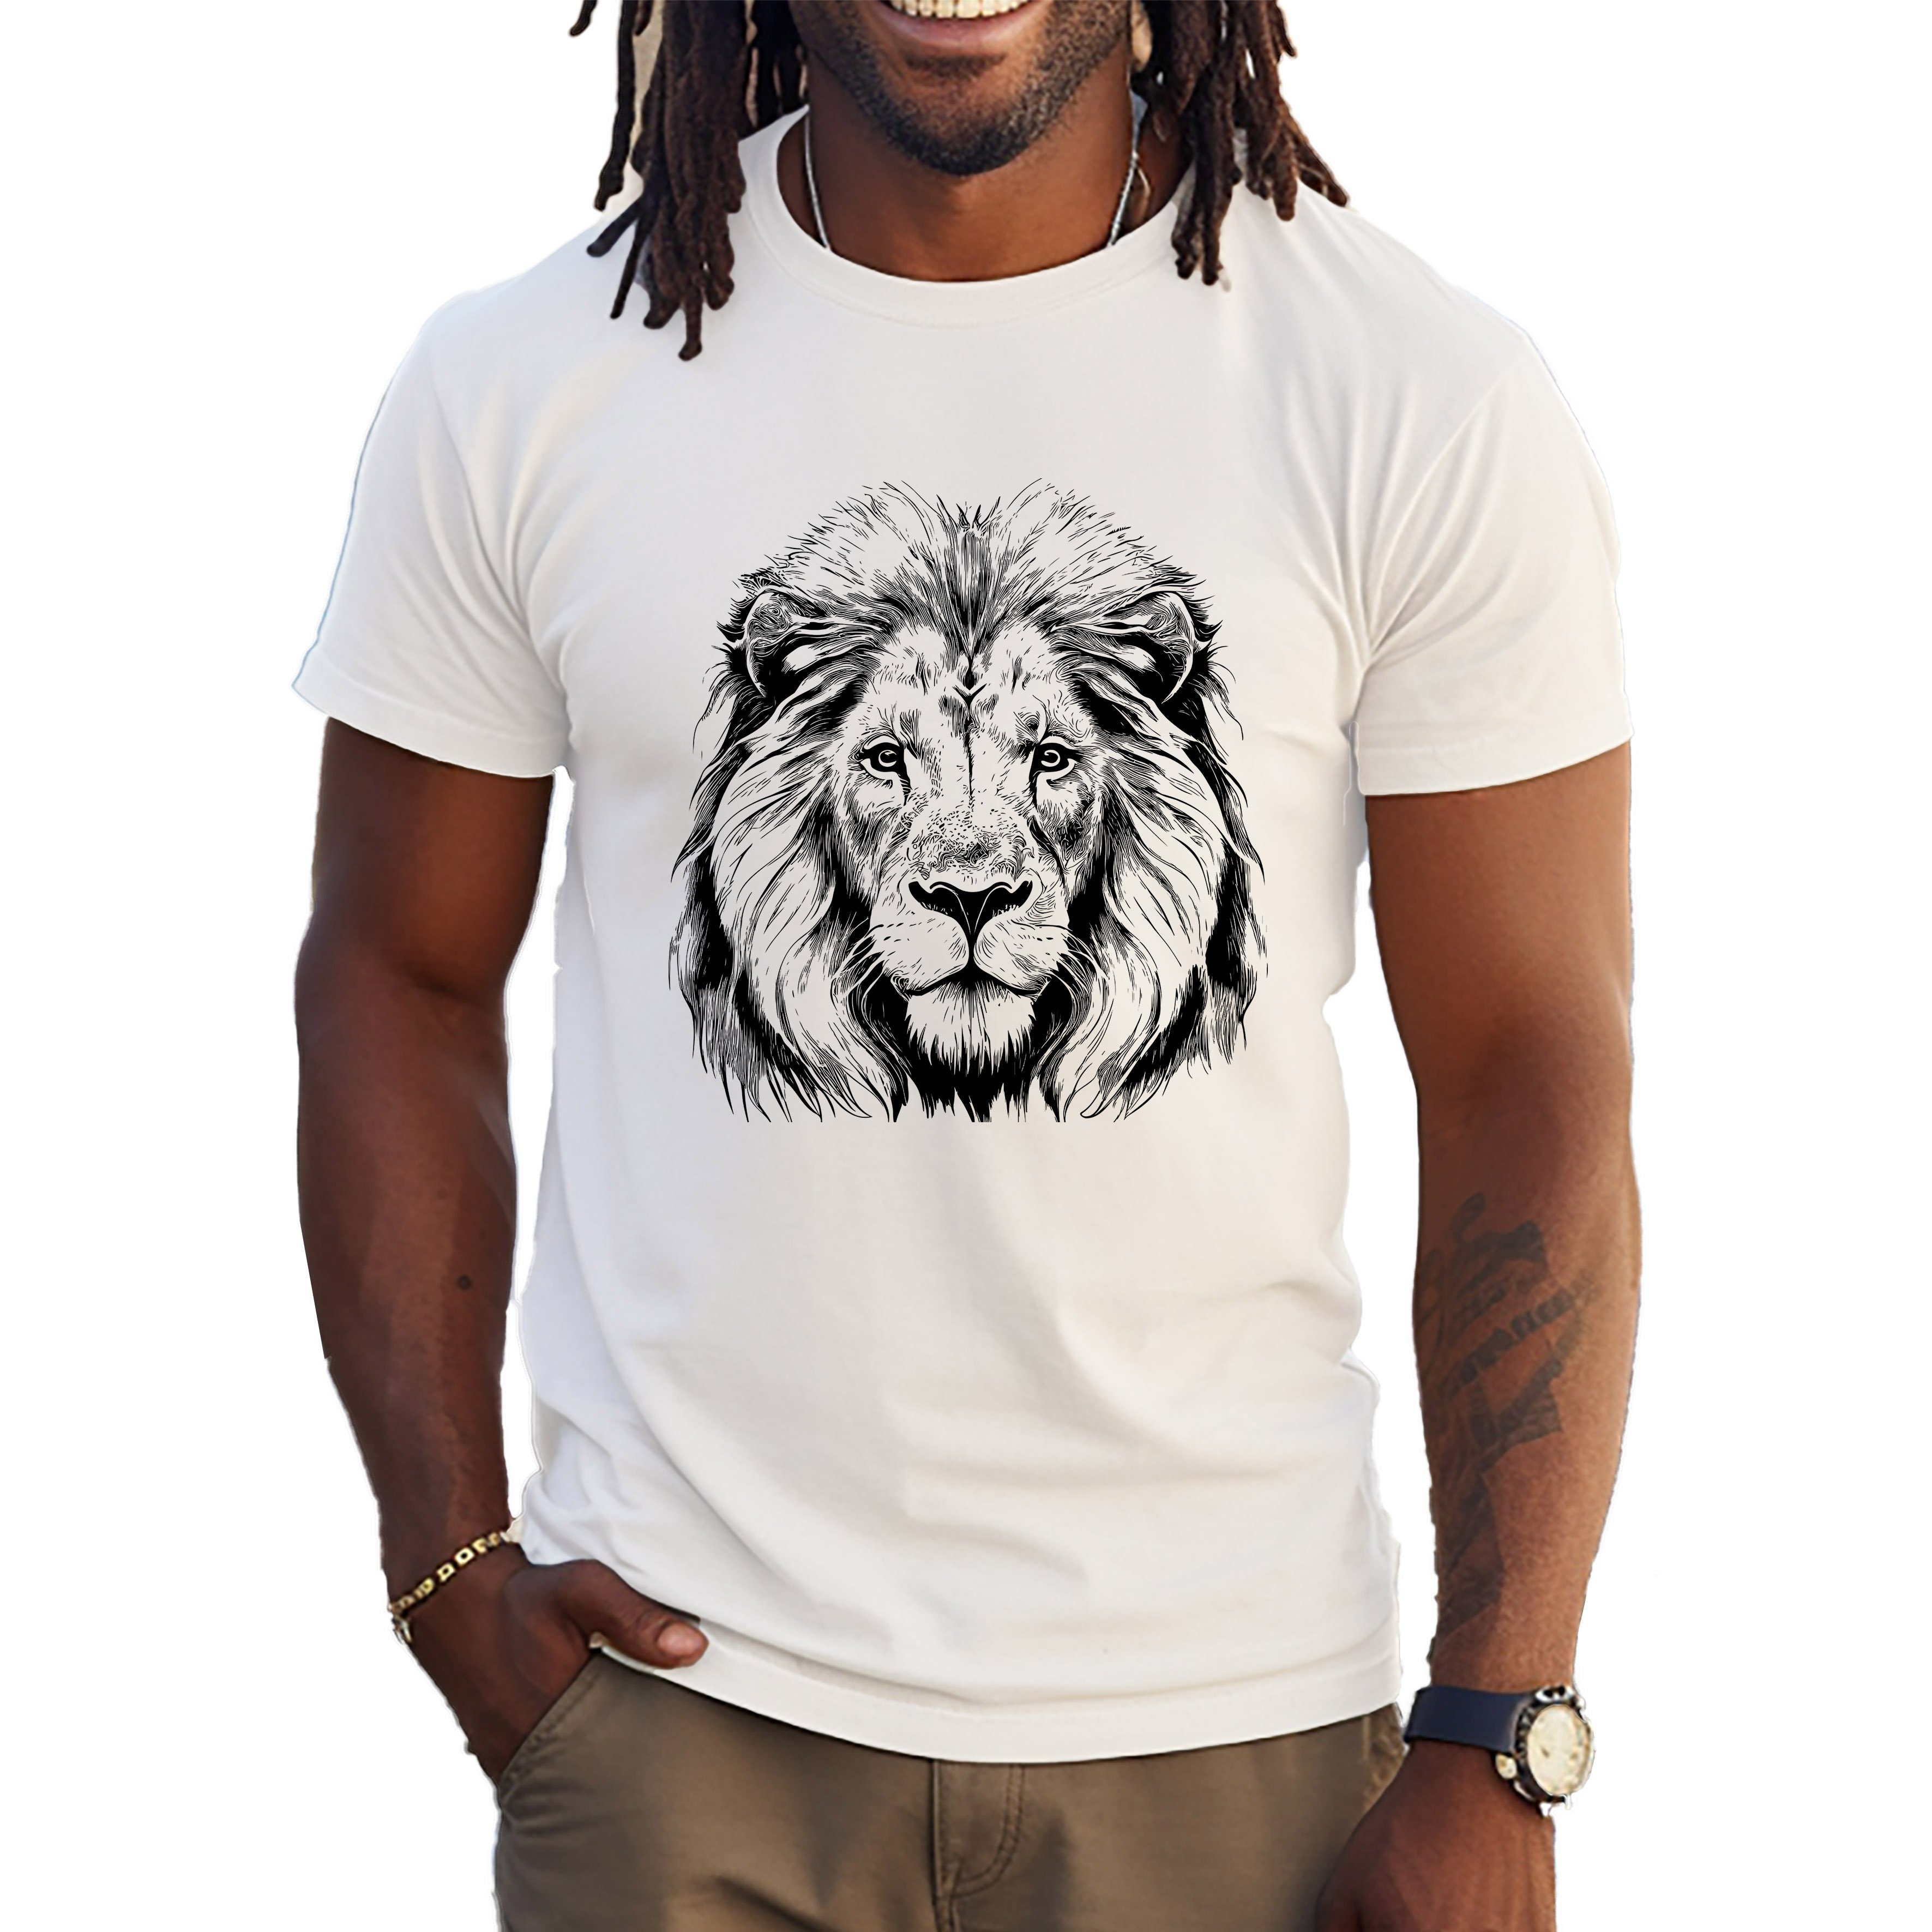 Banco T-Shirt Lion King Löwe of Jungle Weiß Summer 100% Sommer the Freizeit Baumwolle